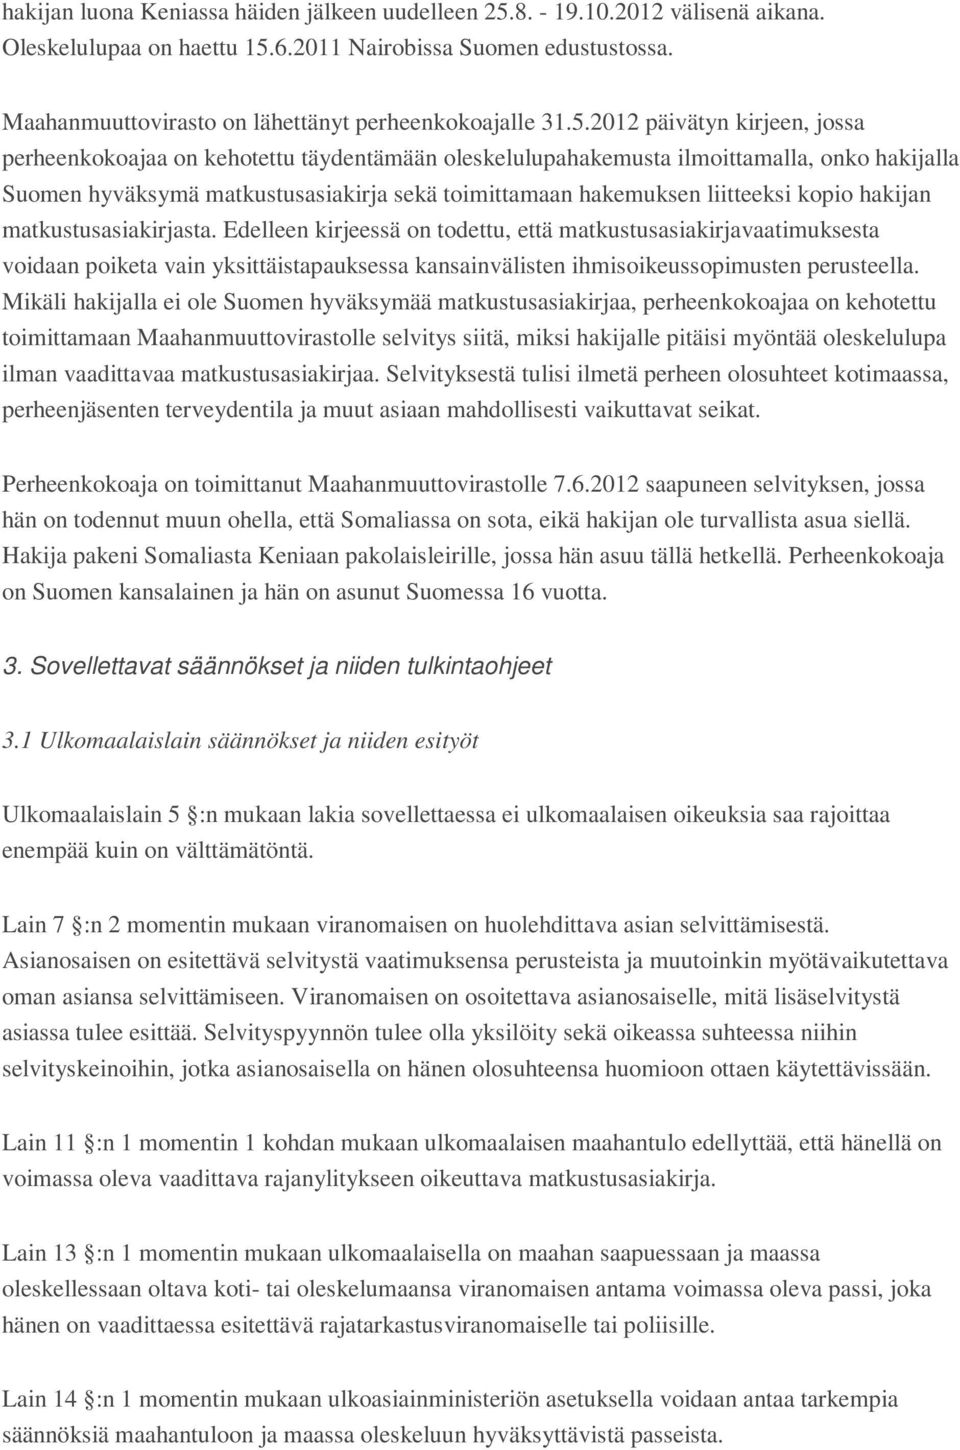 2012 päivätyn kirjeen, jossa perheenkokoajaa on kehotettu täydentämään oleskelulupahakemusta ilmoittamalla, onko hakijalla Suomen hyväksymä matkustusasiakirja sekä toimittamaan hakemuksen liitteeksi